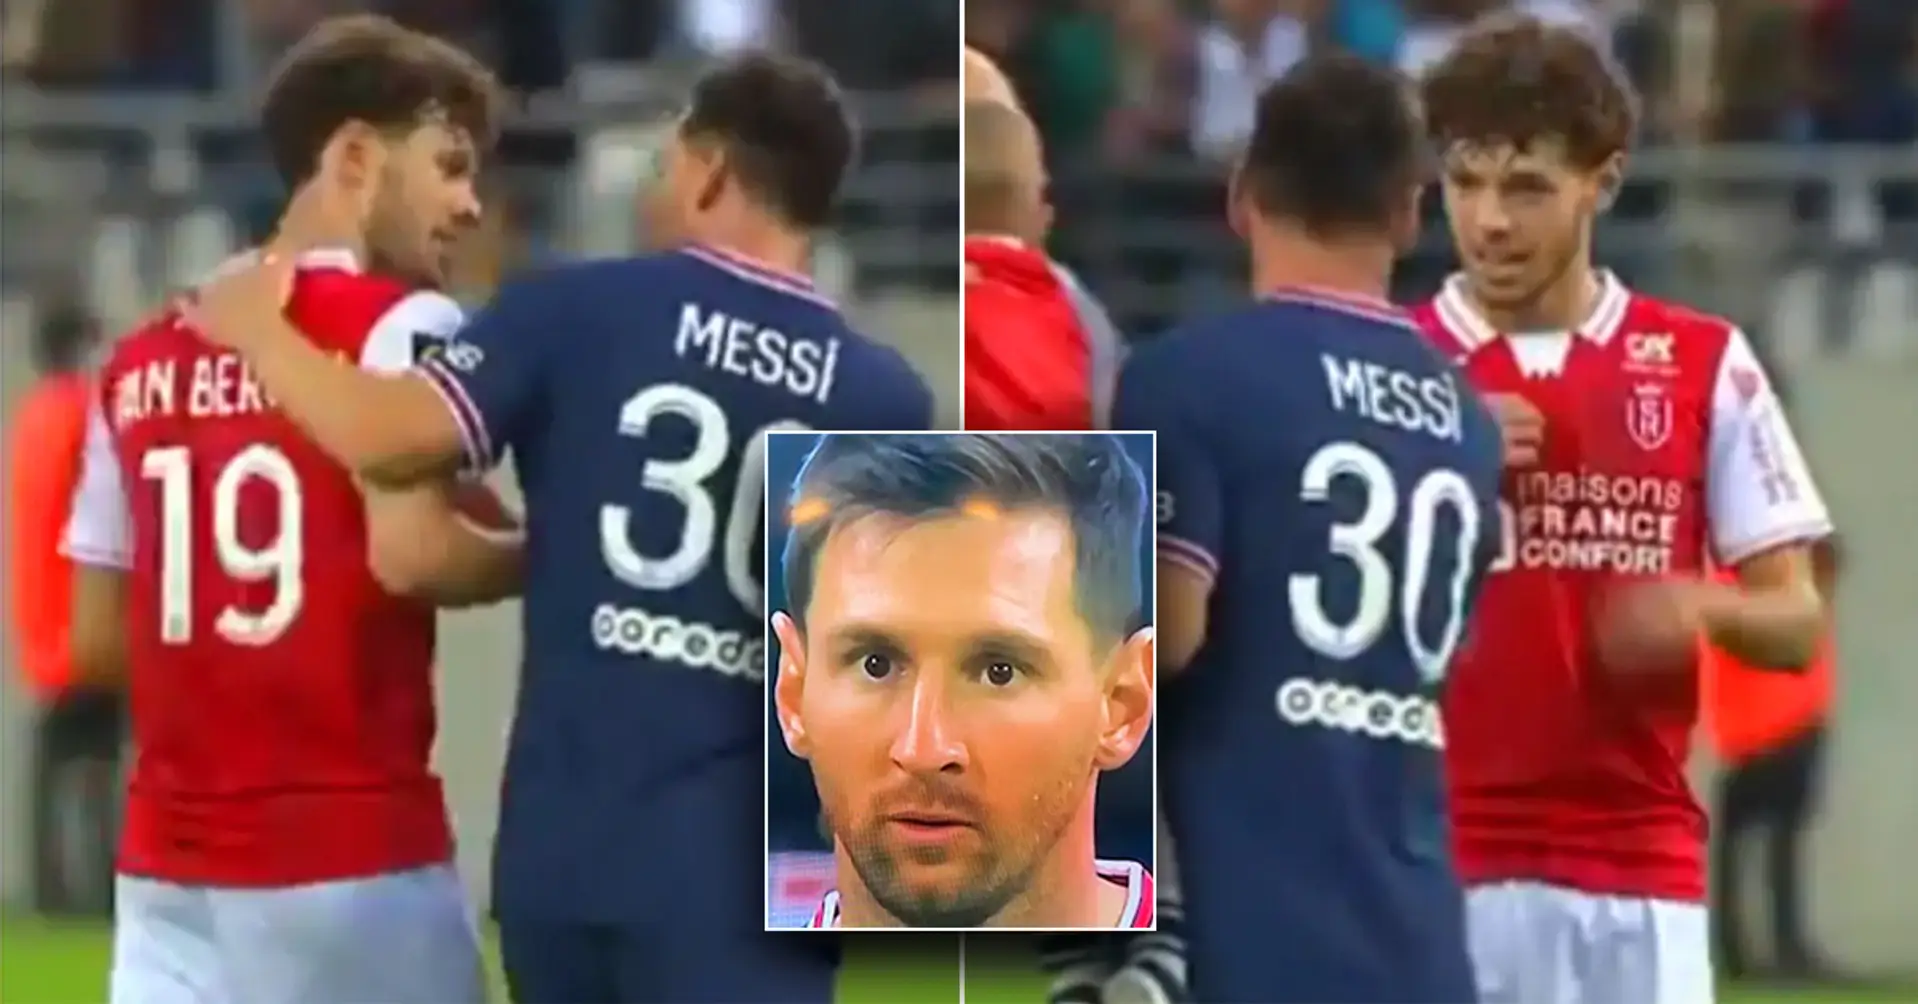 Von Kamera erwischt: Was zwischen Lionel Messi und dem 22-jährigen Spieler von Reims passierte